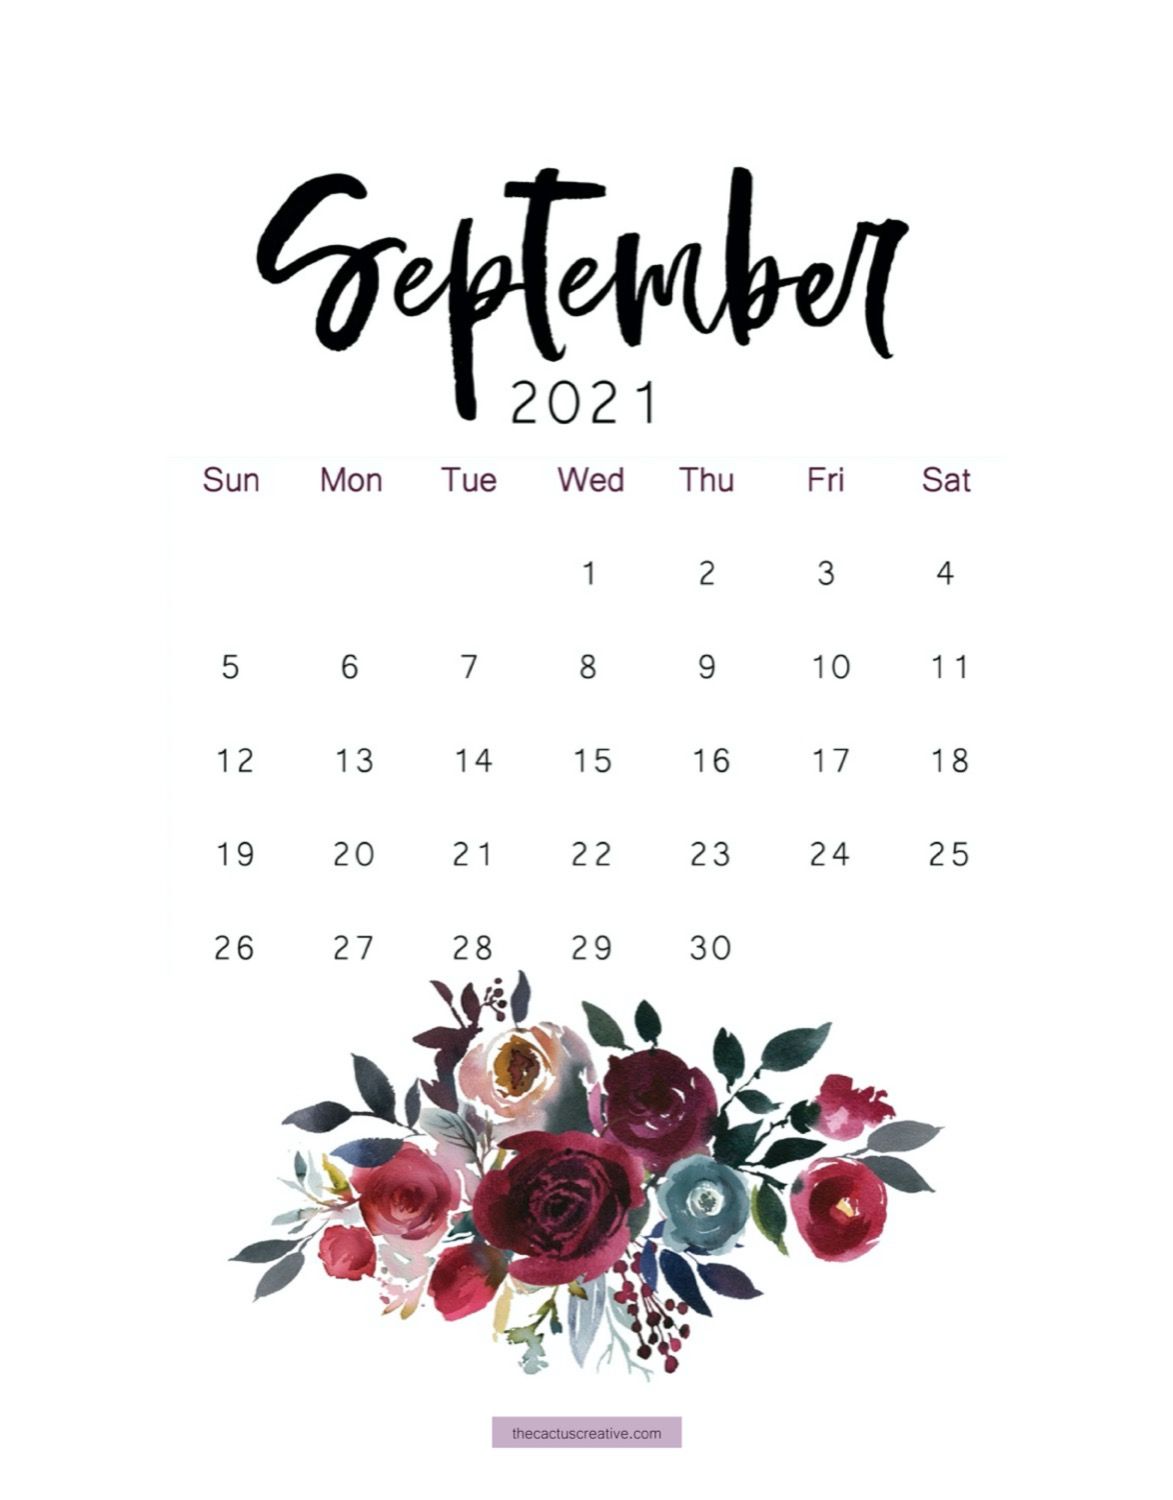 September 2021 Calendar Wallpaper Free September 2021 Calendar Background